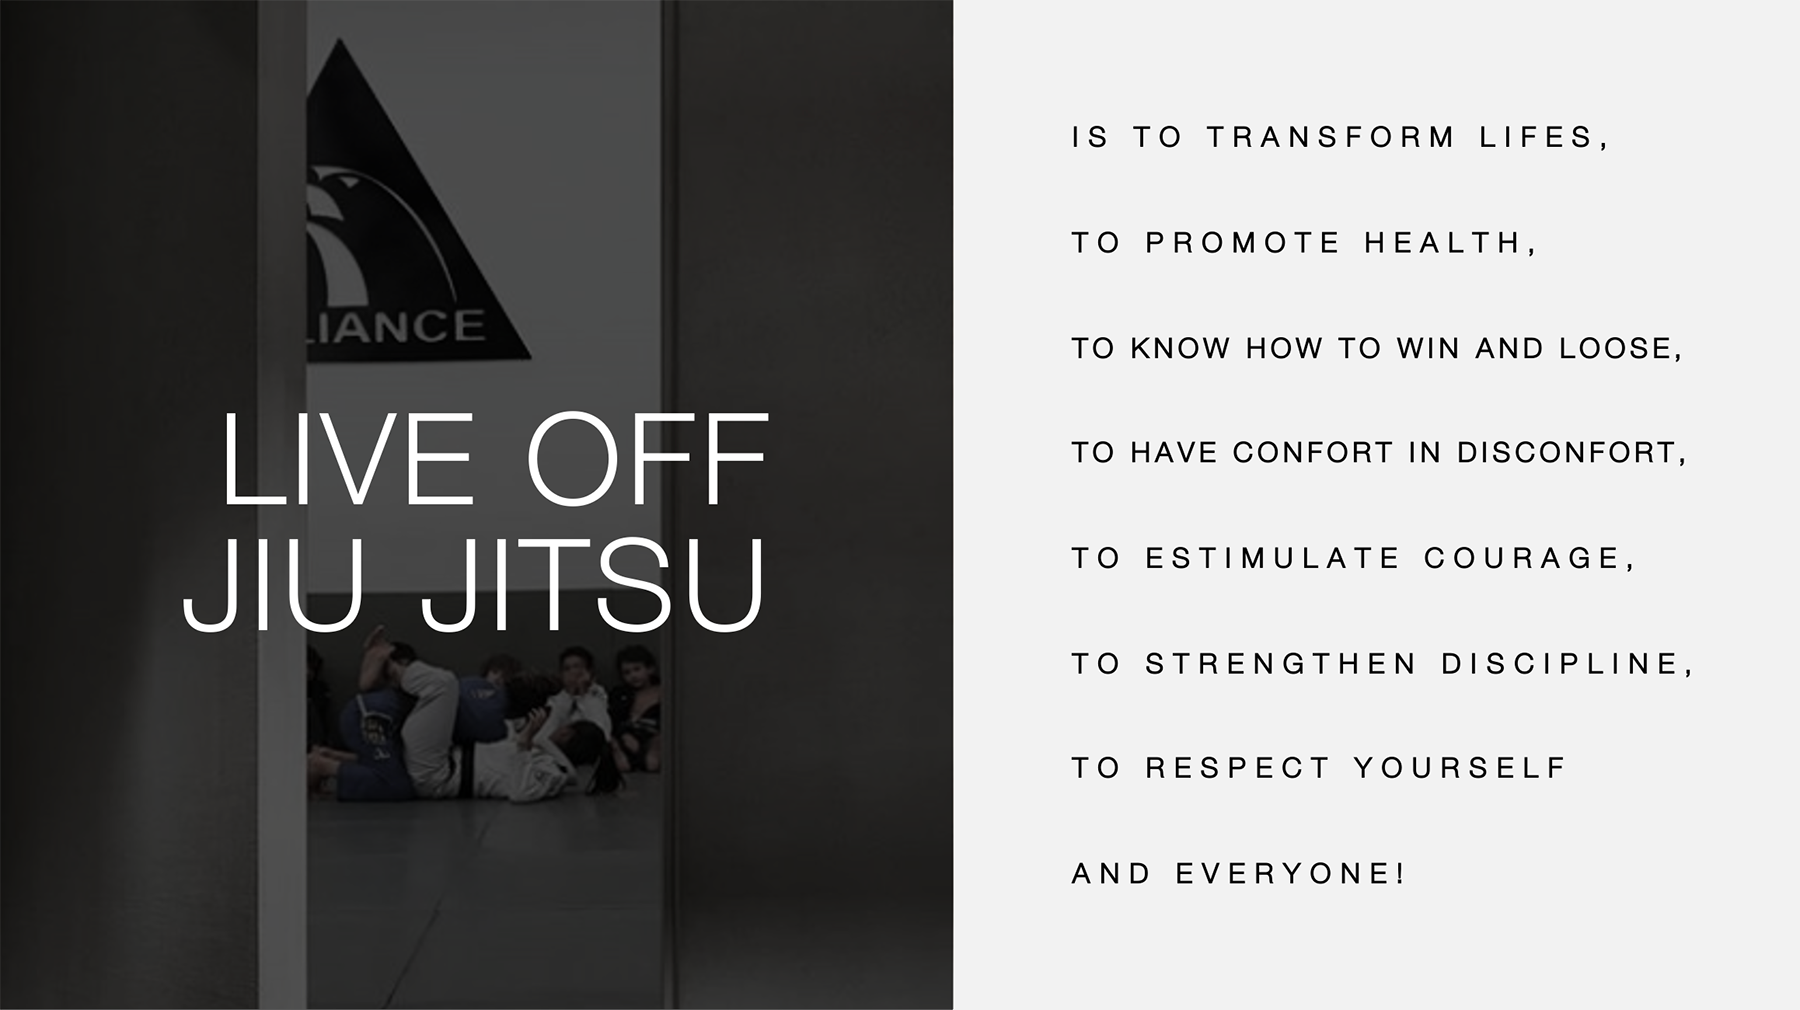 Live off jiu jitsu